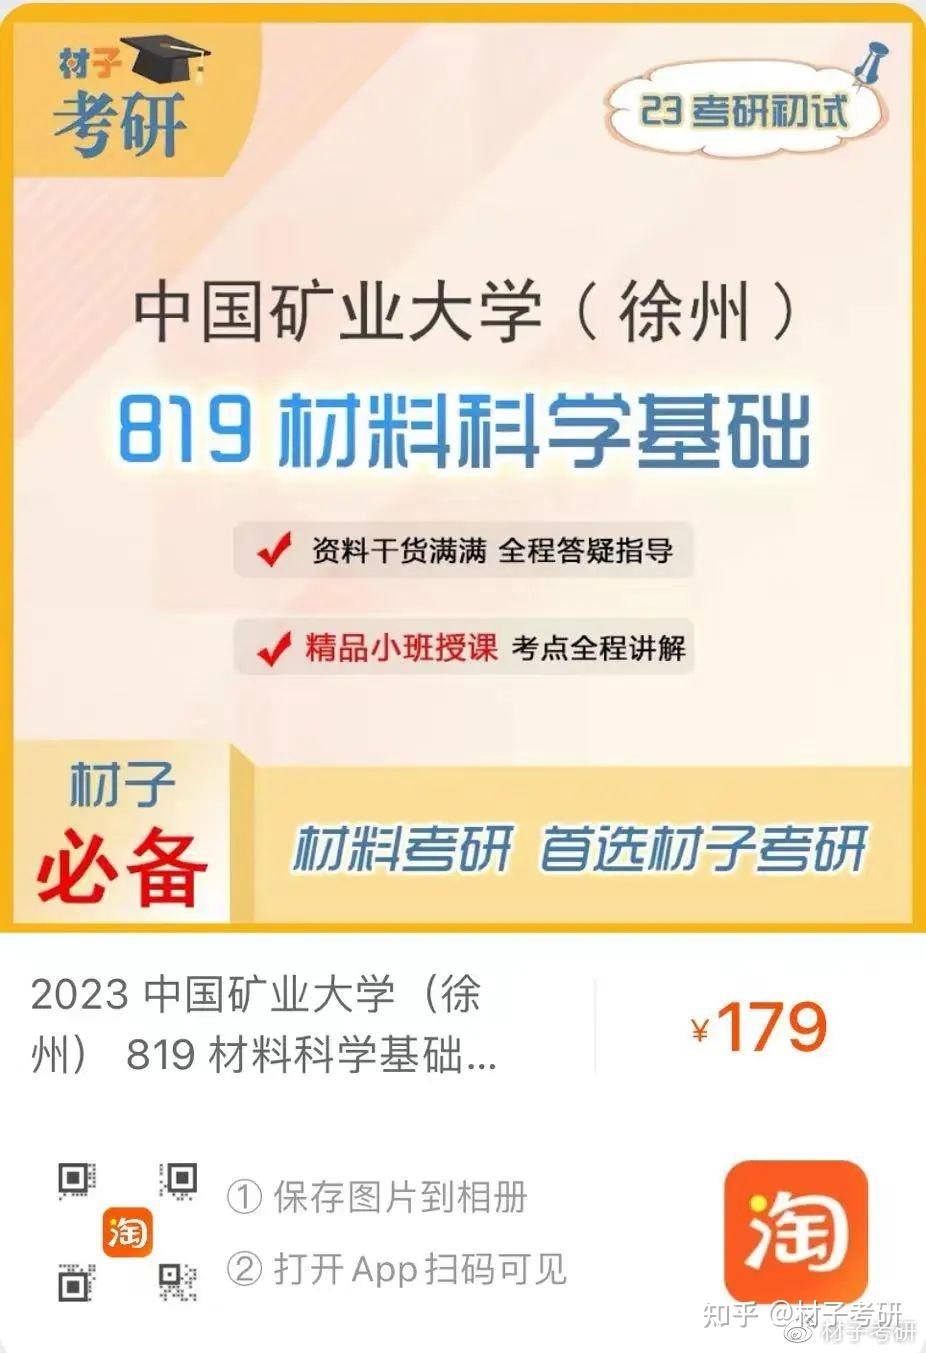 【择校指南】2023中国矿业大学(徐州)考研情况介绍